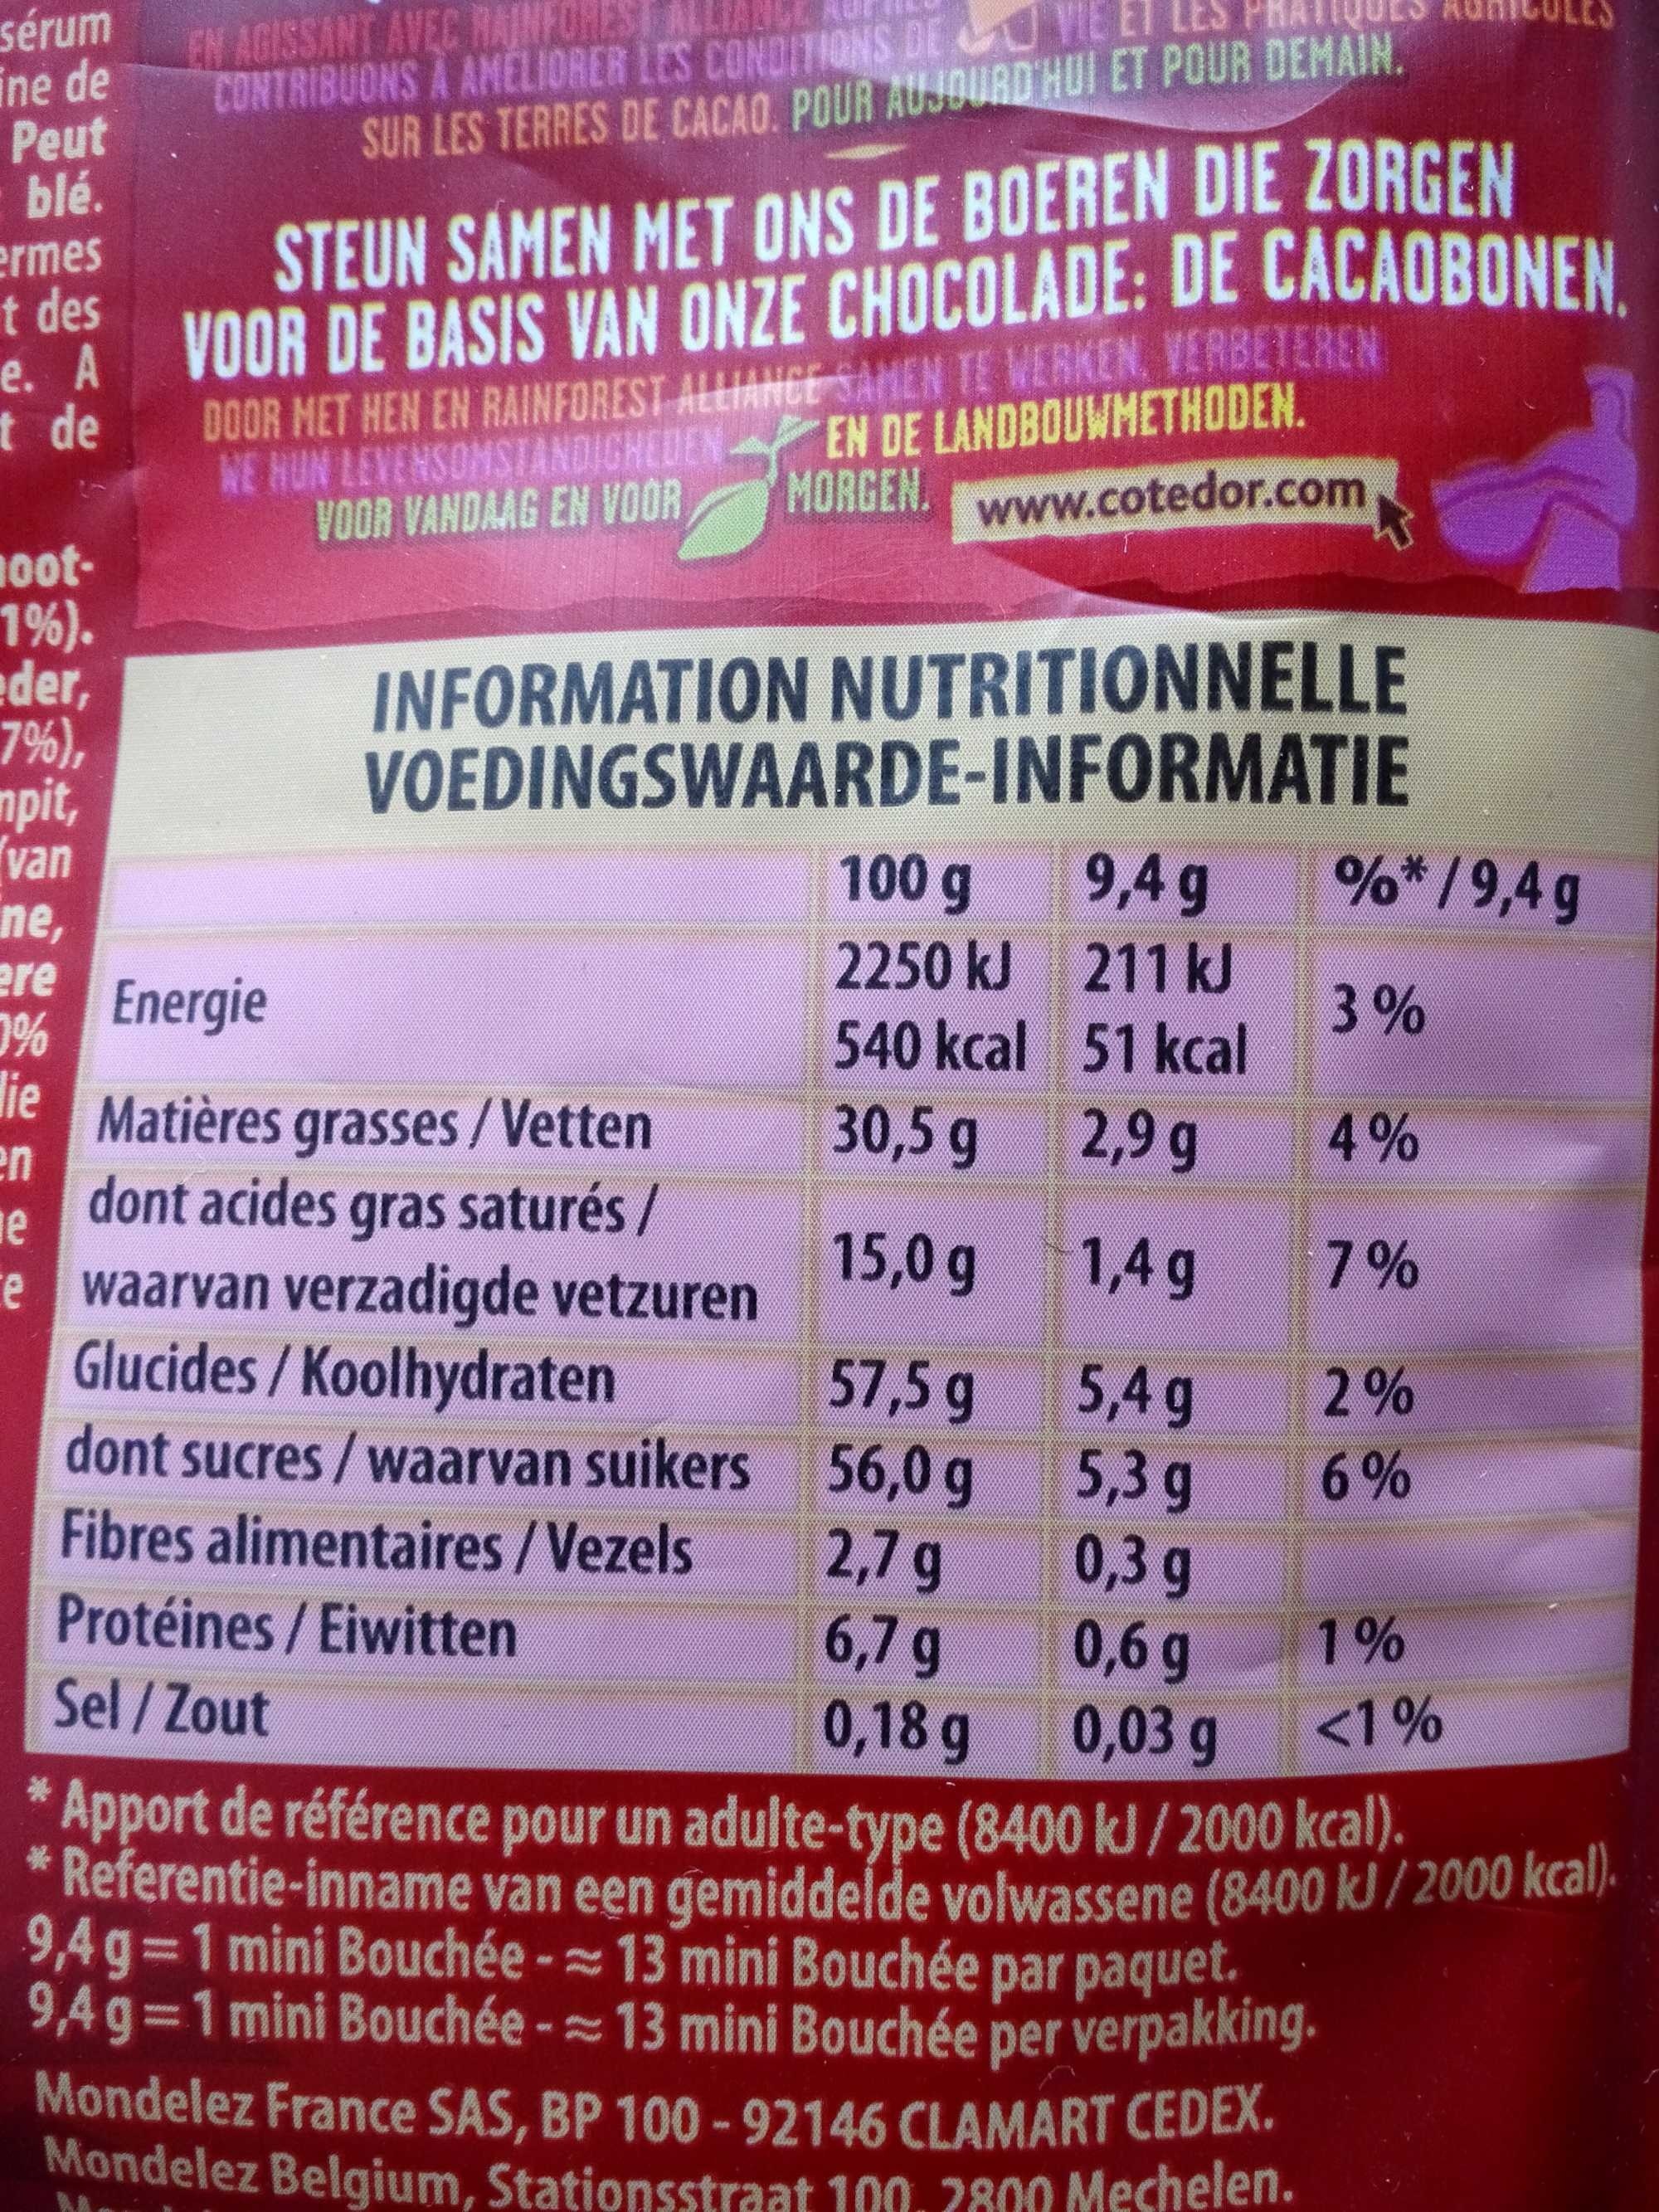 Mini Bouchée - Lait - Nutrition facts - fr